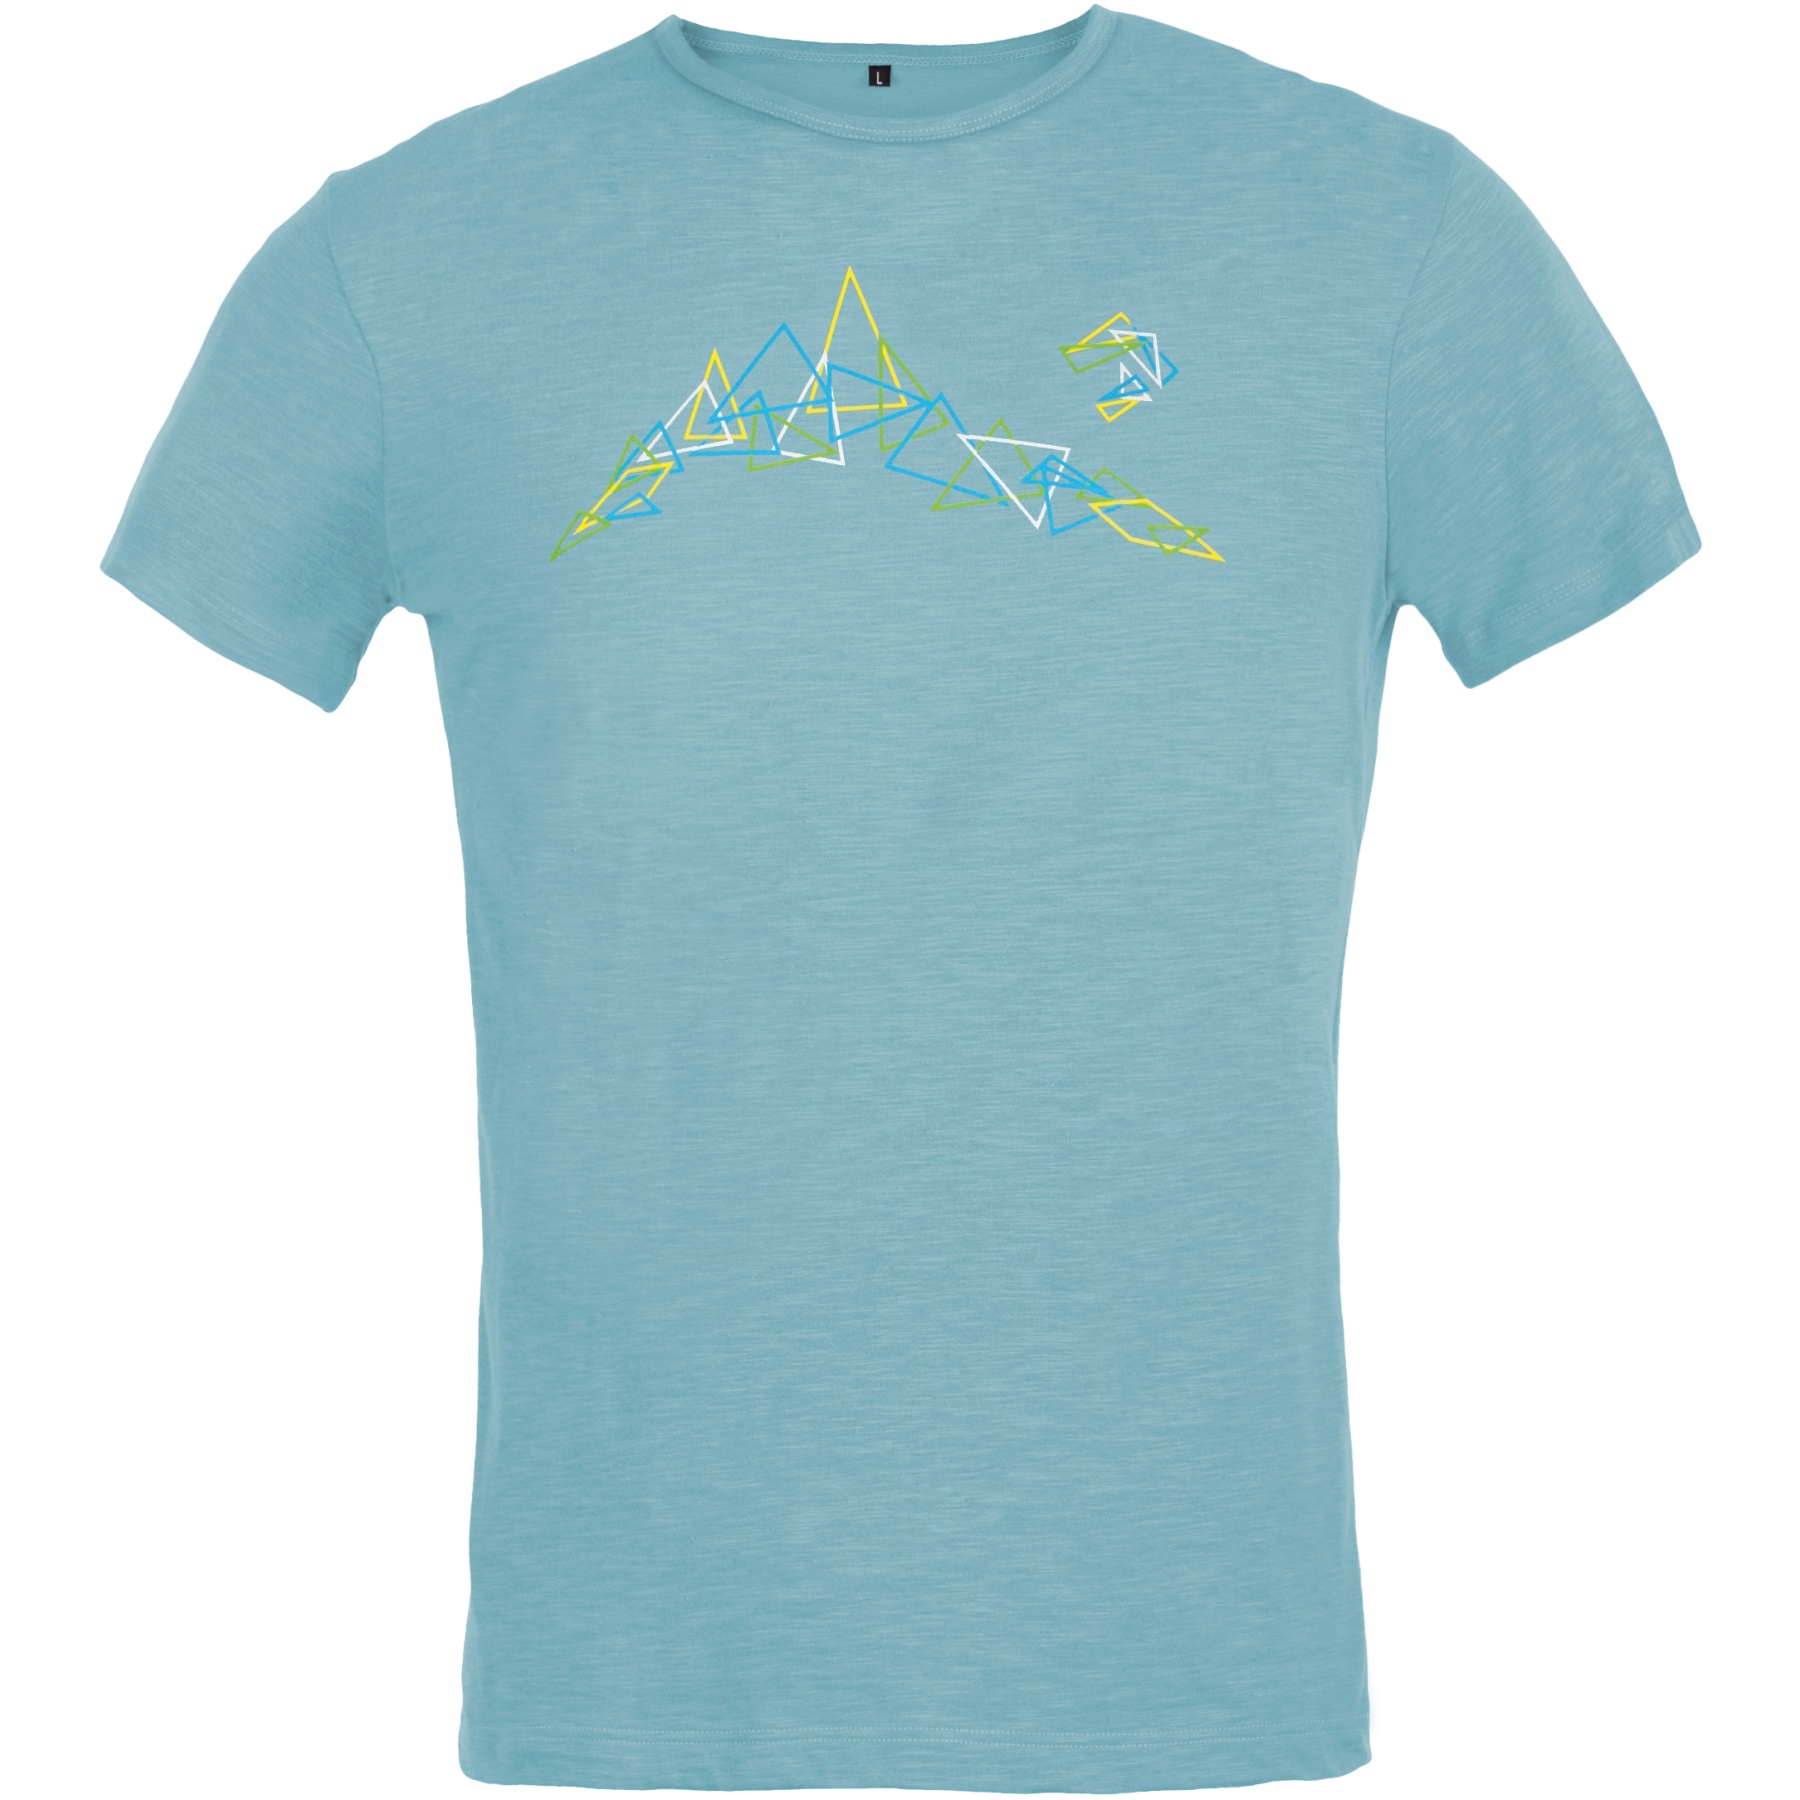 Produktbild von Directalpine Bosco Triangles T-Shirt - arctic (triangles)